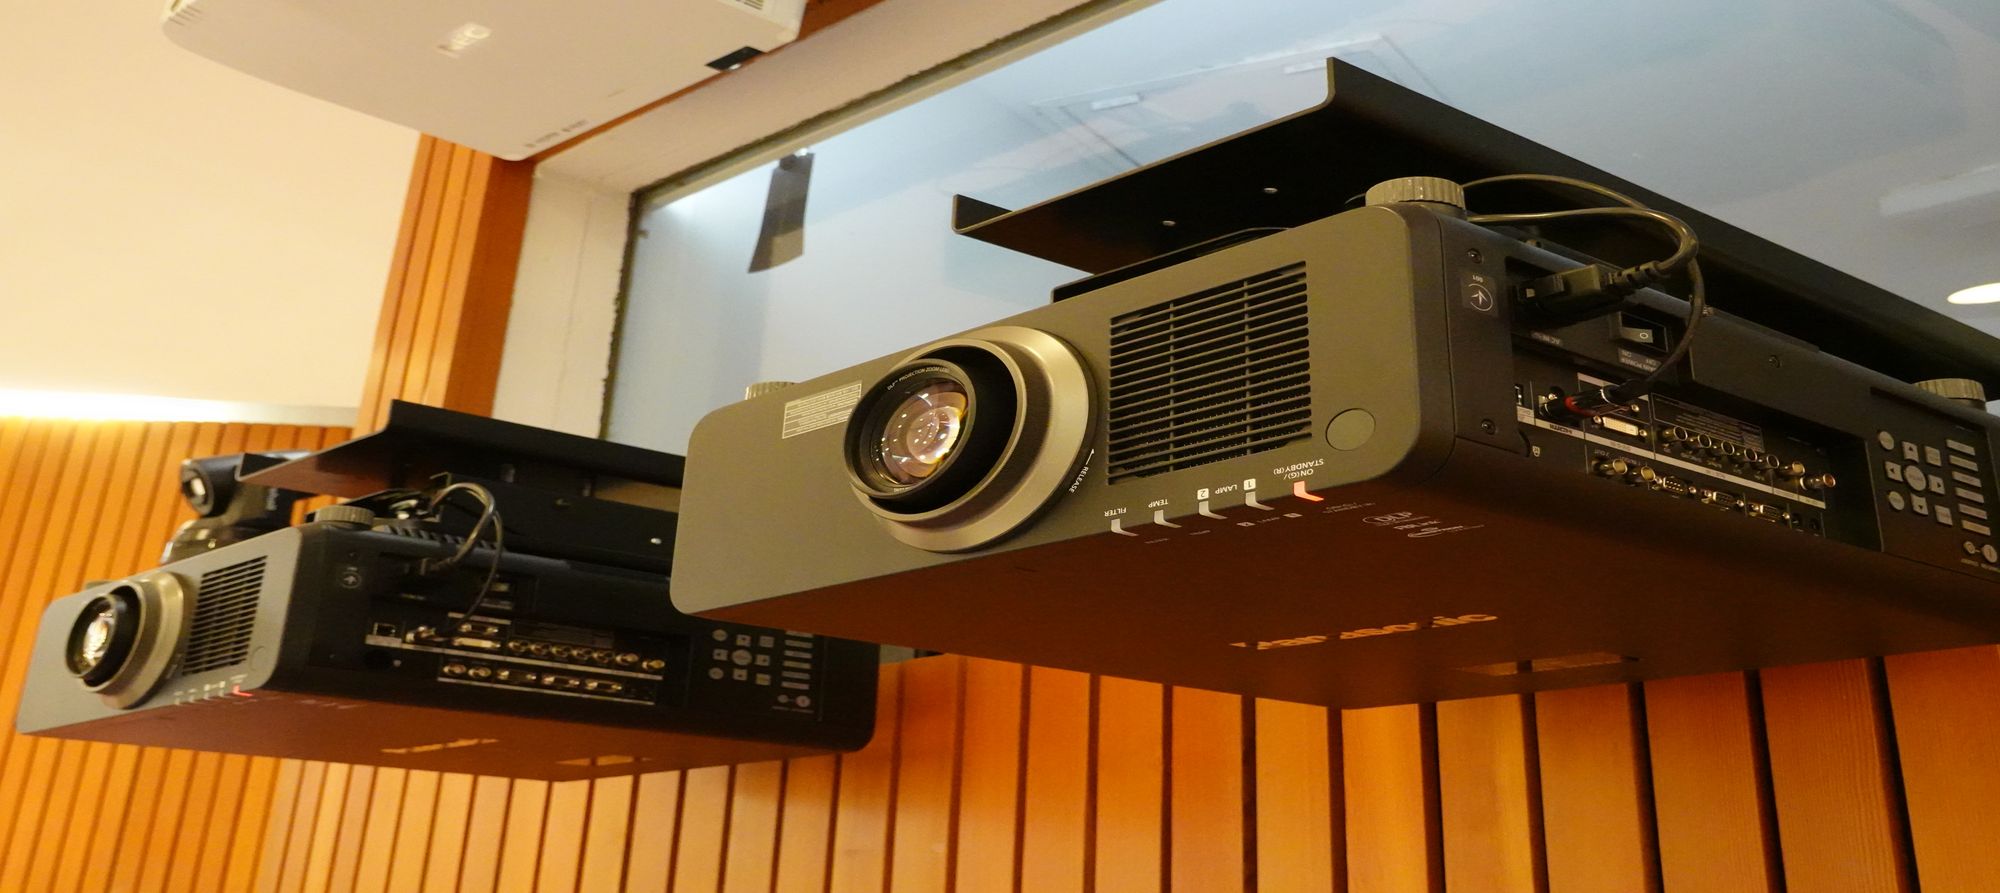 Zwei neue Projektoren ermöglichen eine Live-Video-Darstellung in 3D und mit 4K.